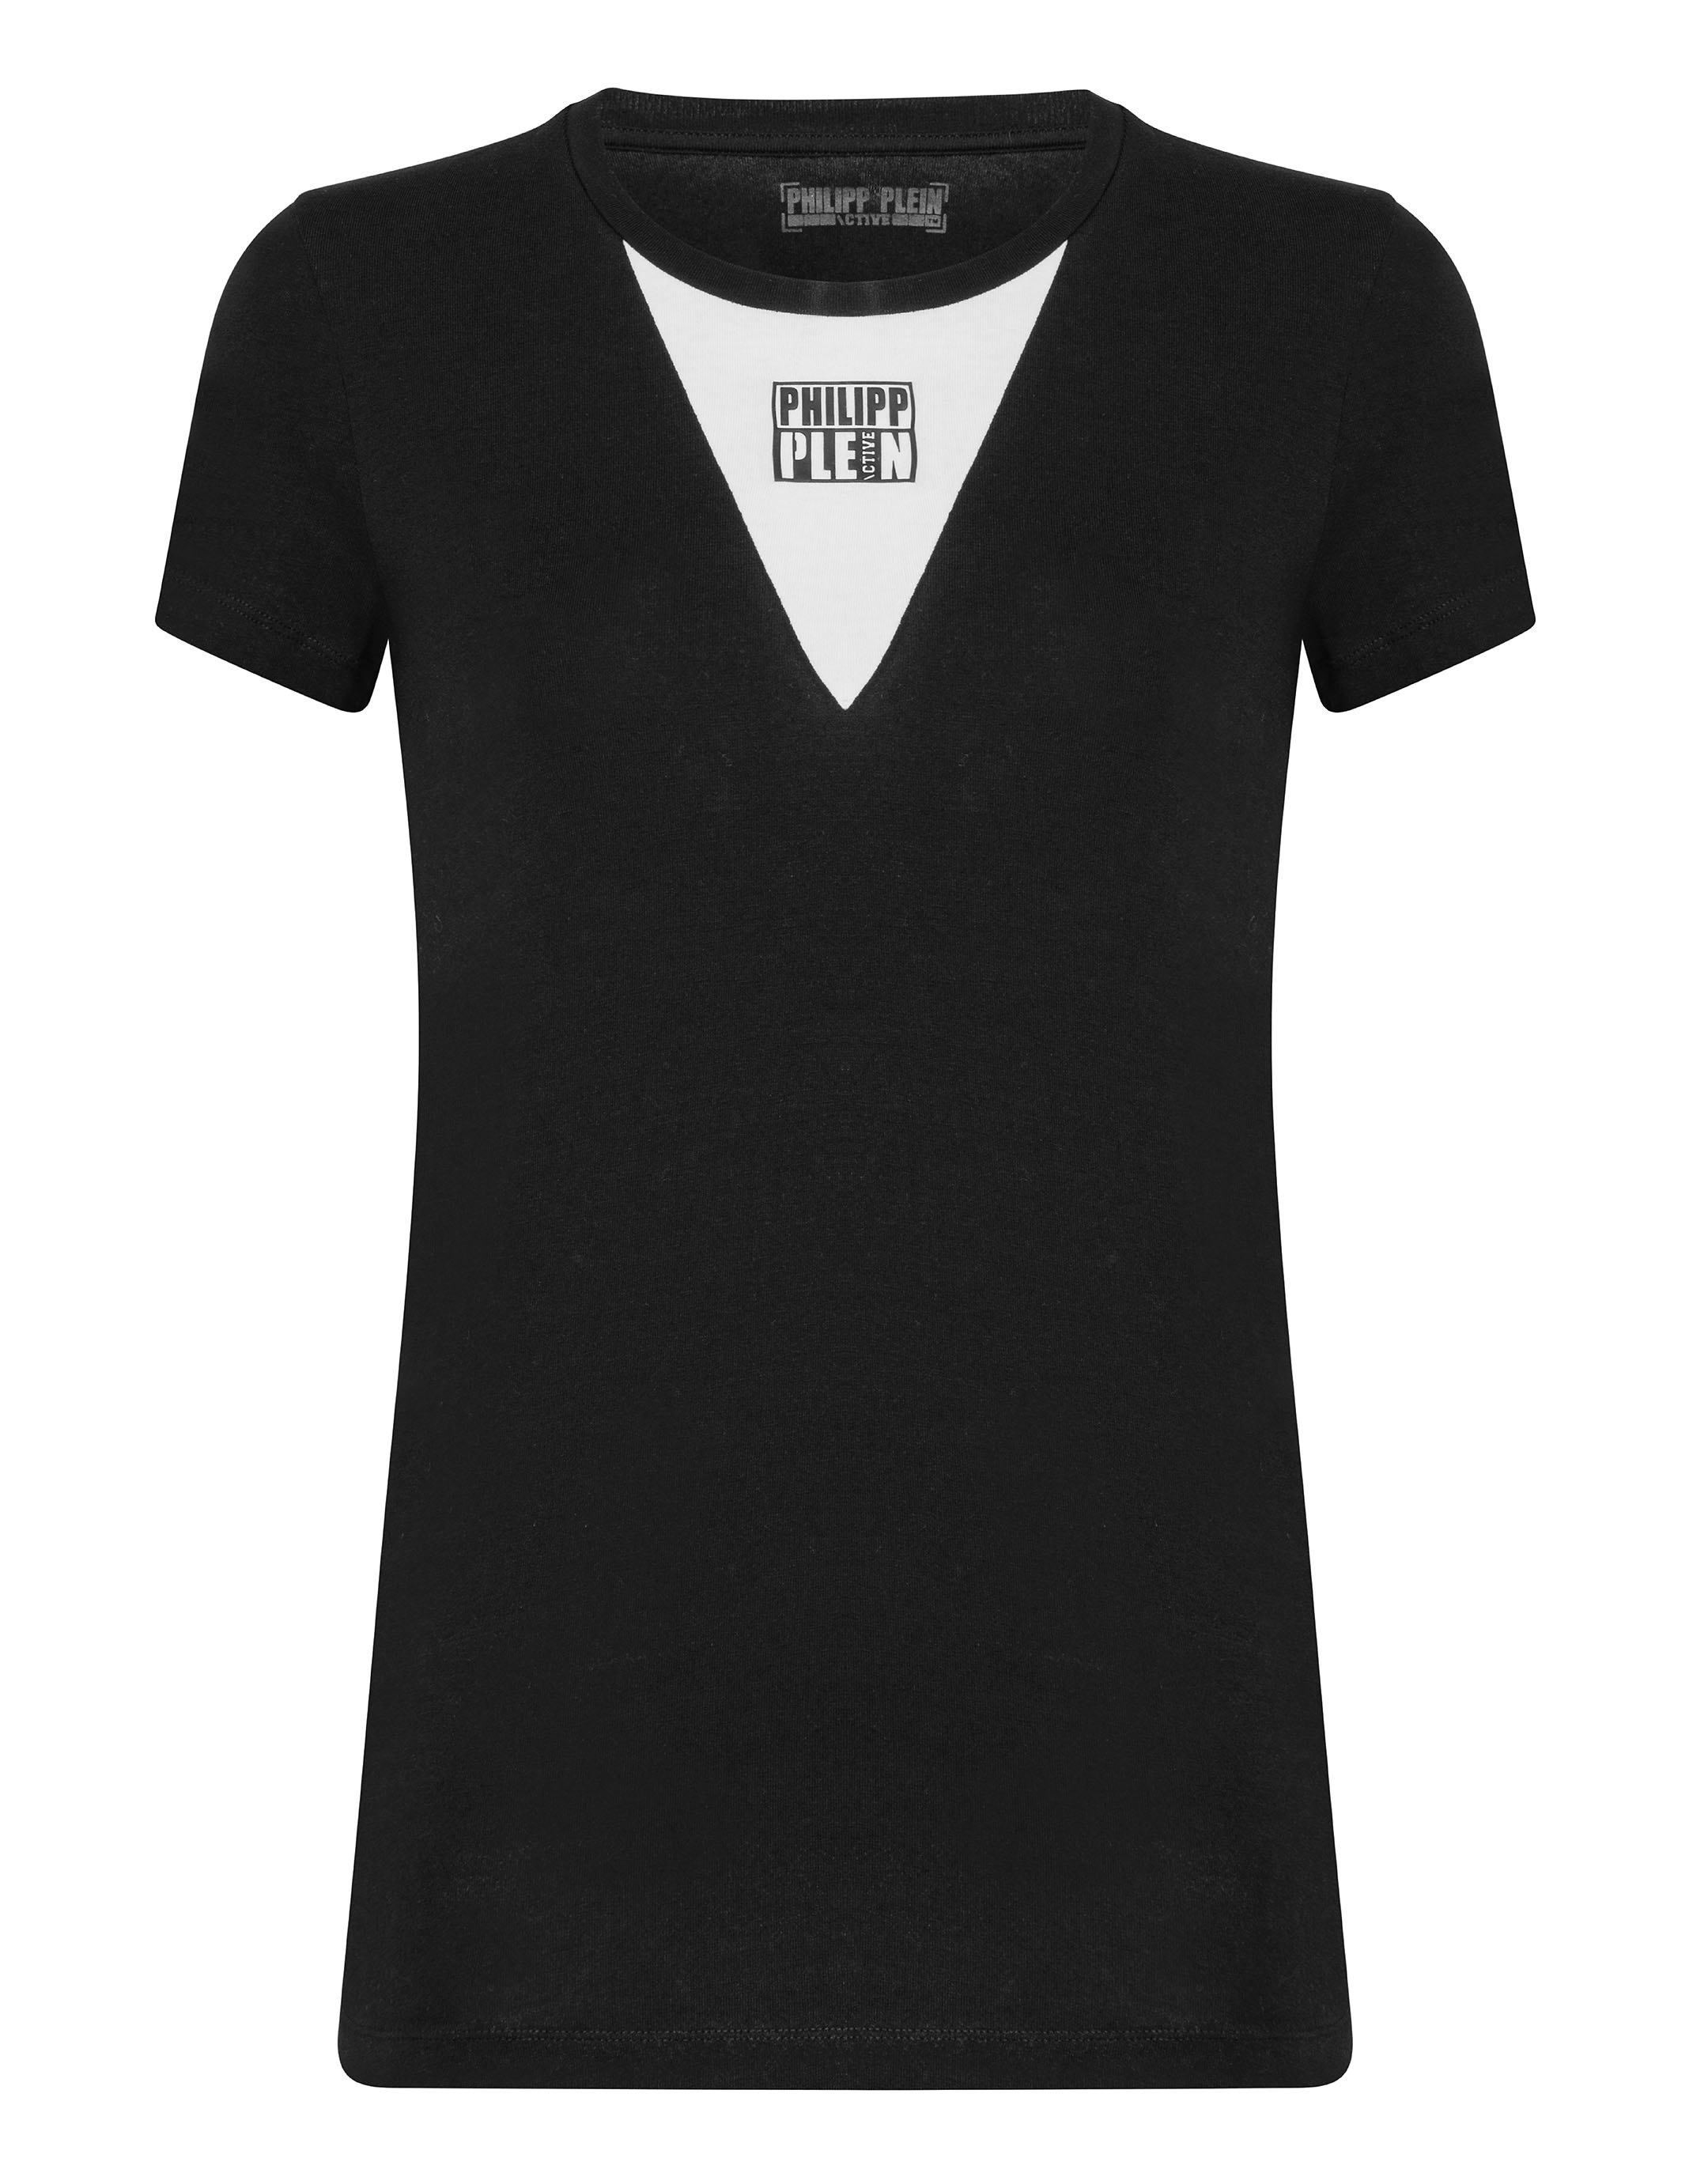 Philipp Plein T-shirt Round Neck Ss Original In Black